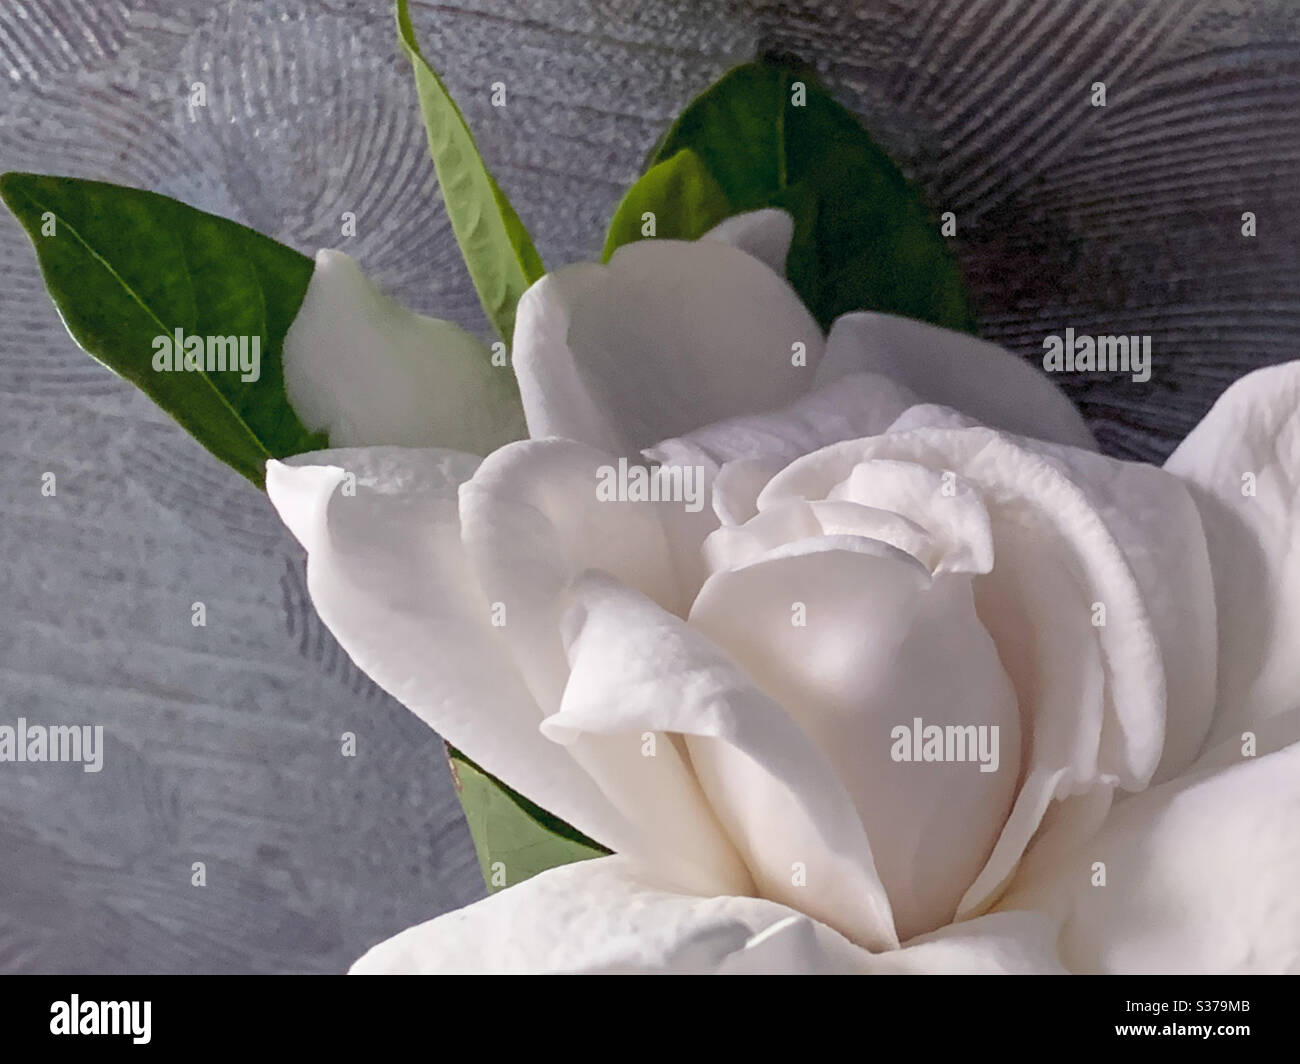 White gardenia flower on silver background Stock Photo